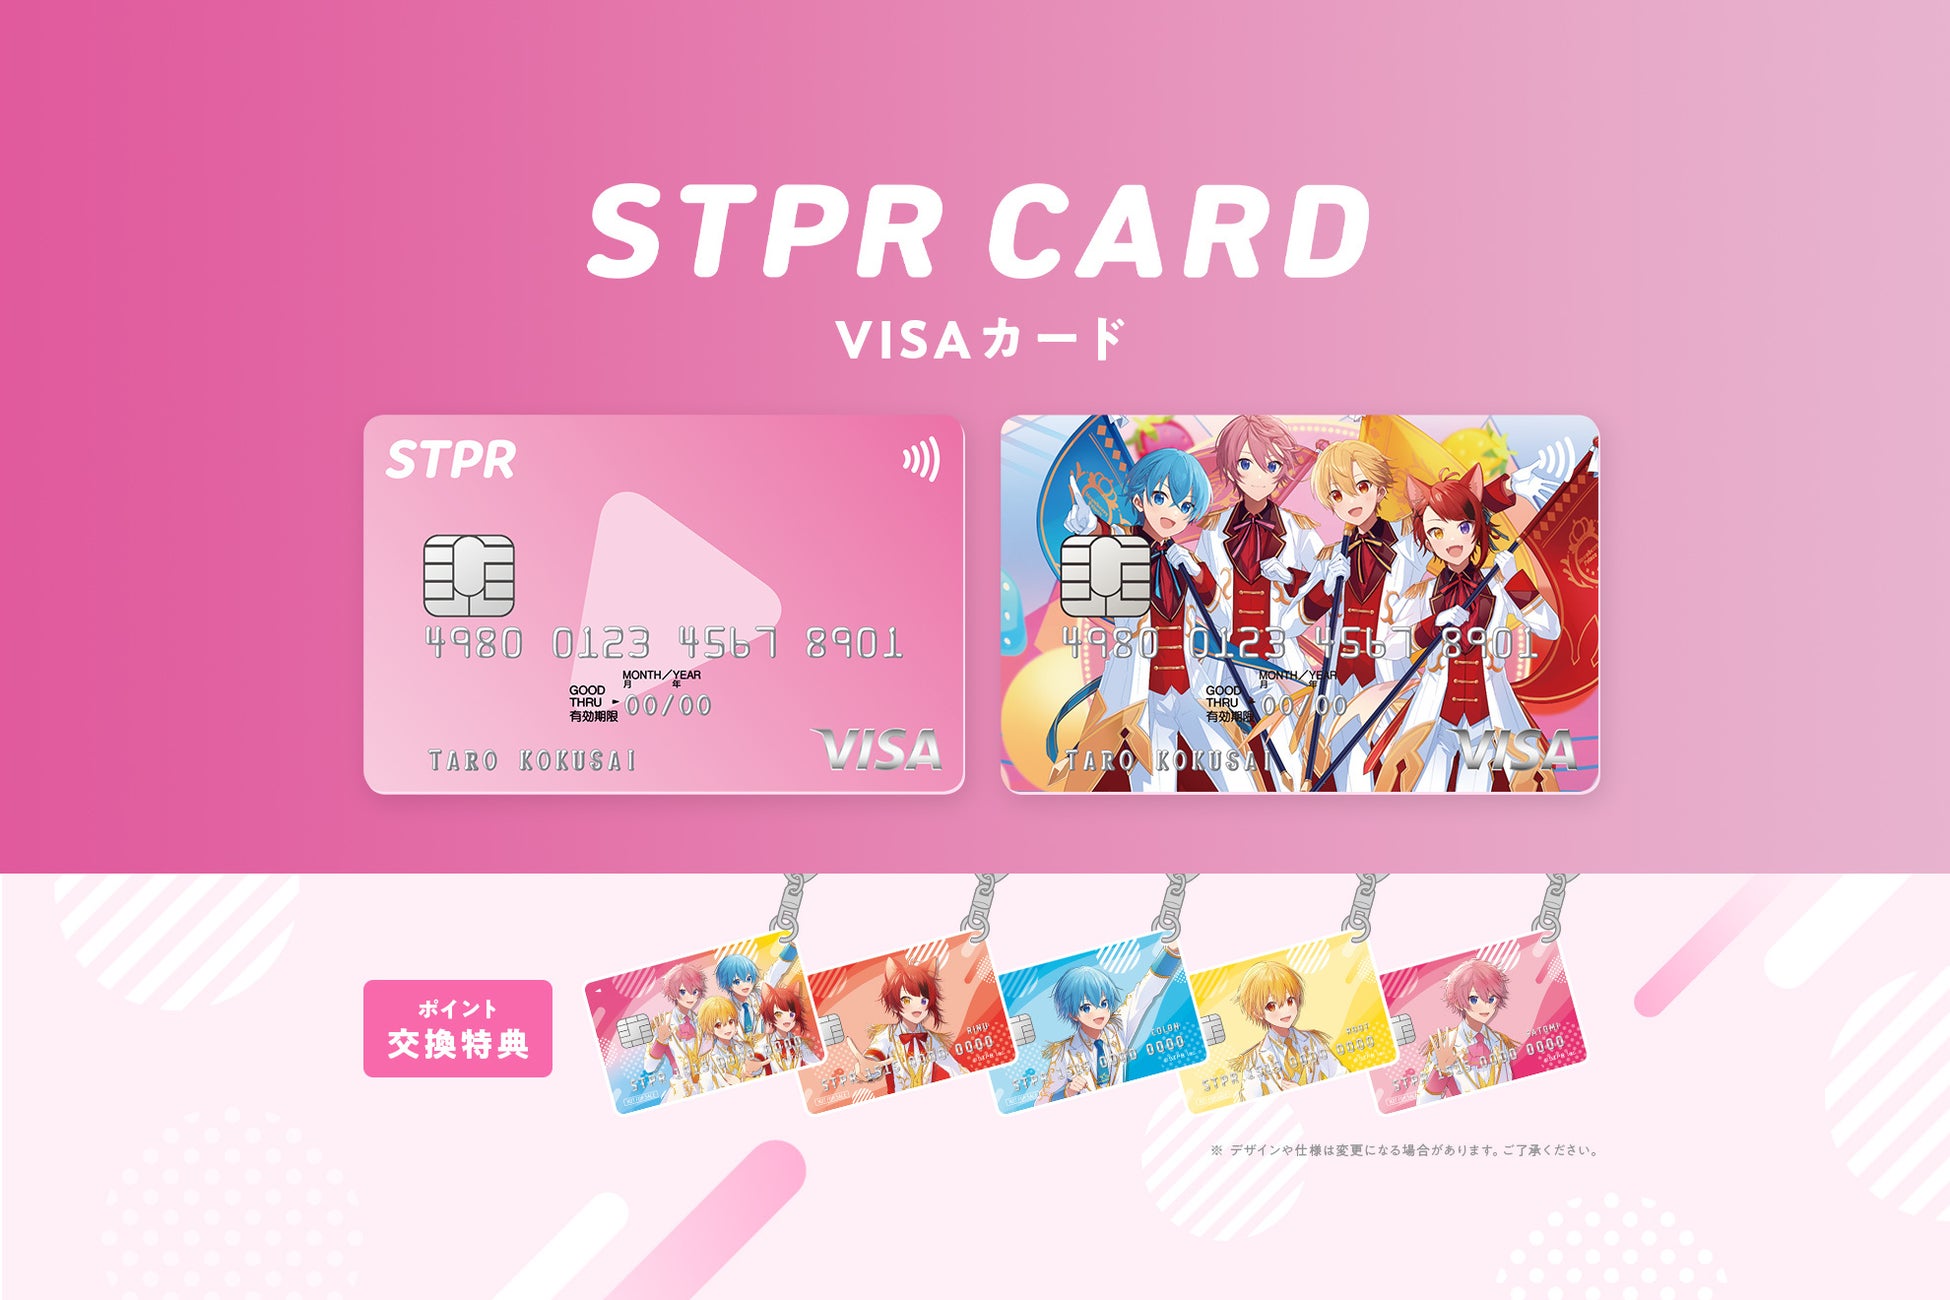 すとぷりデザイン「STPR CARD」の発行開始【株式会社STPR】